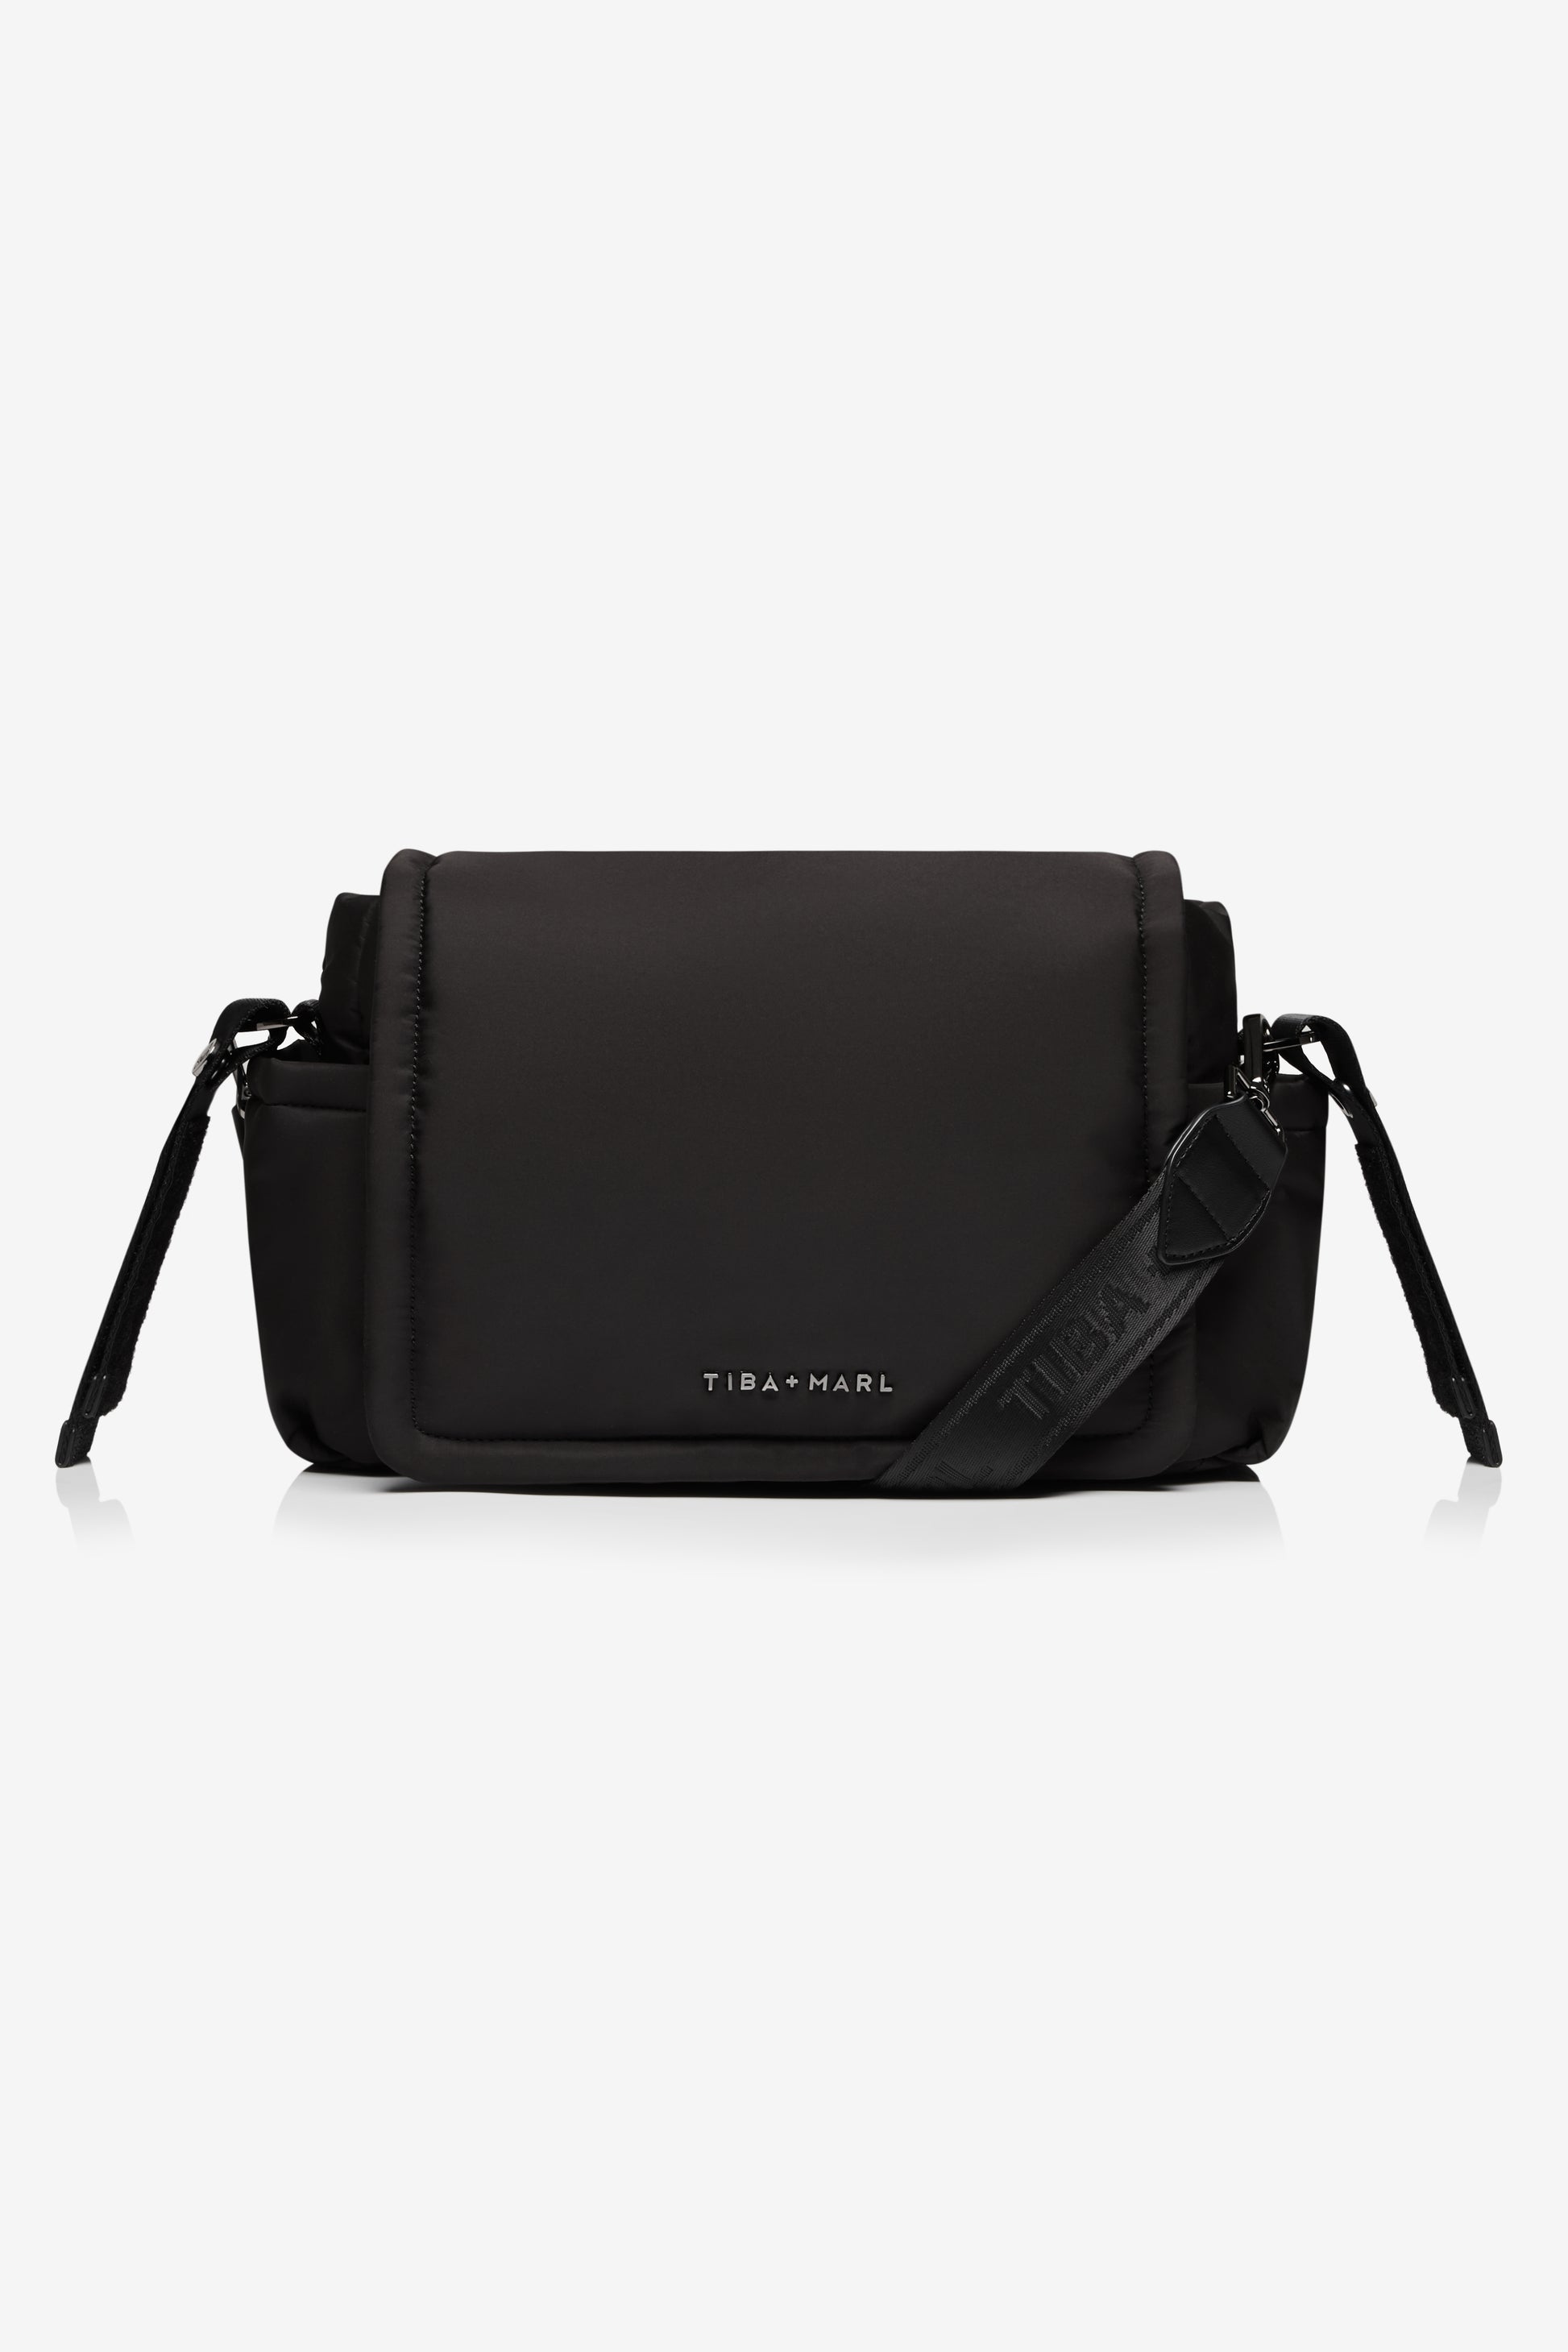 Tiba + Marl Nova Eco Compact Changing Bag | Black